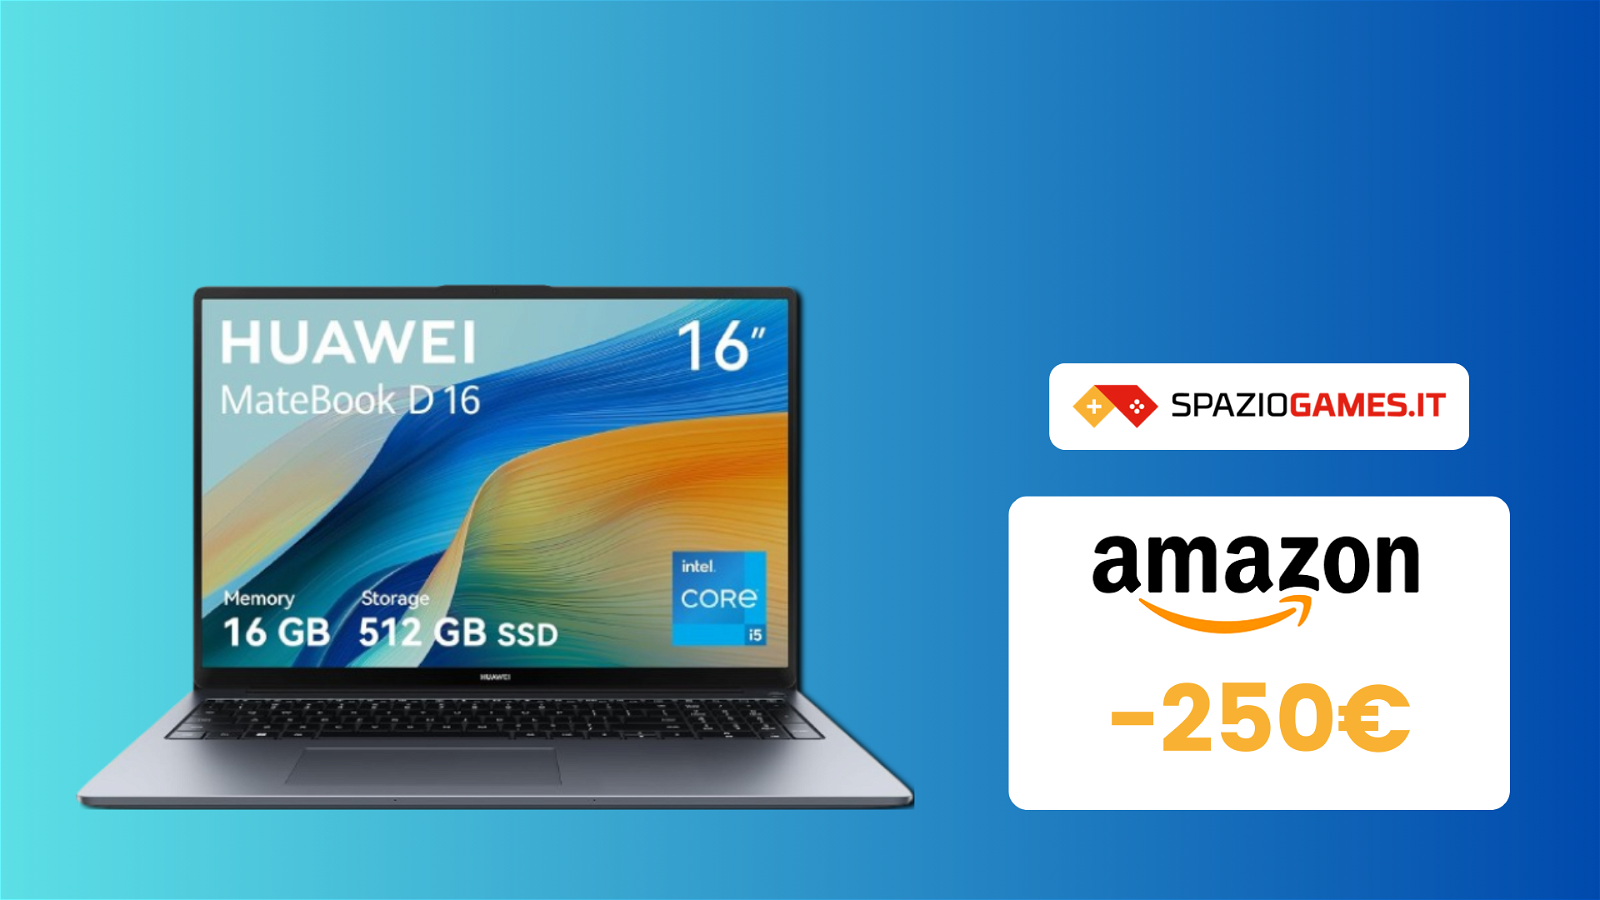 HUAWEI MateBook D 16: oggi Amazon vi offre uno sconto di 250€!